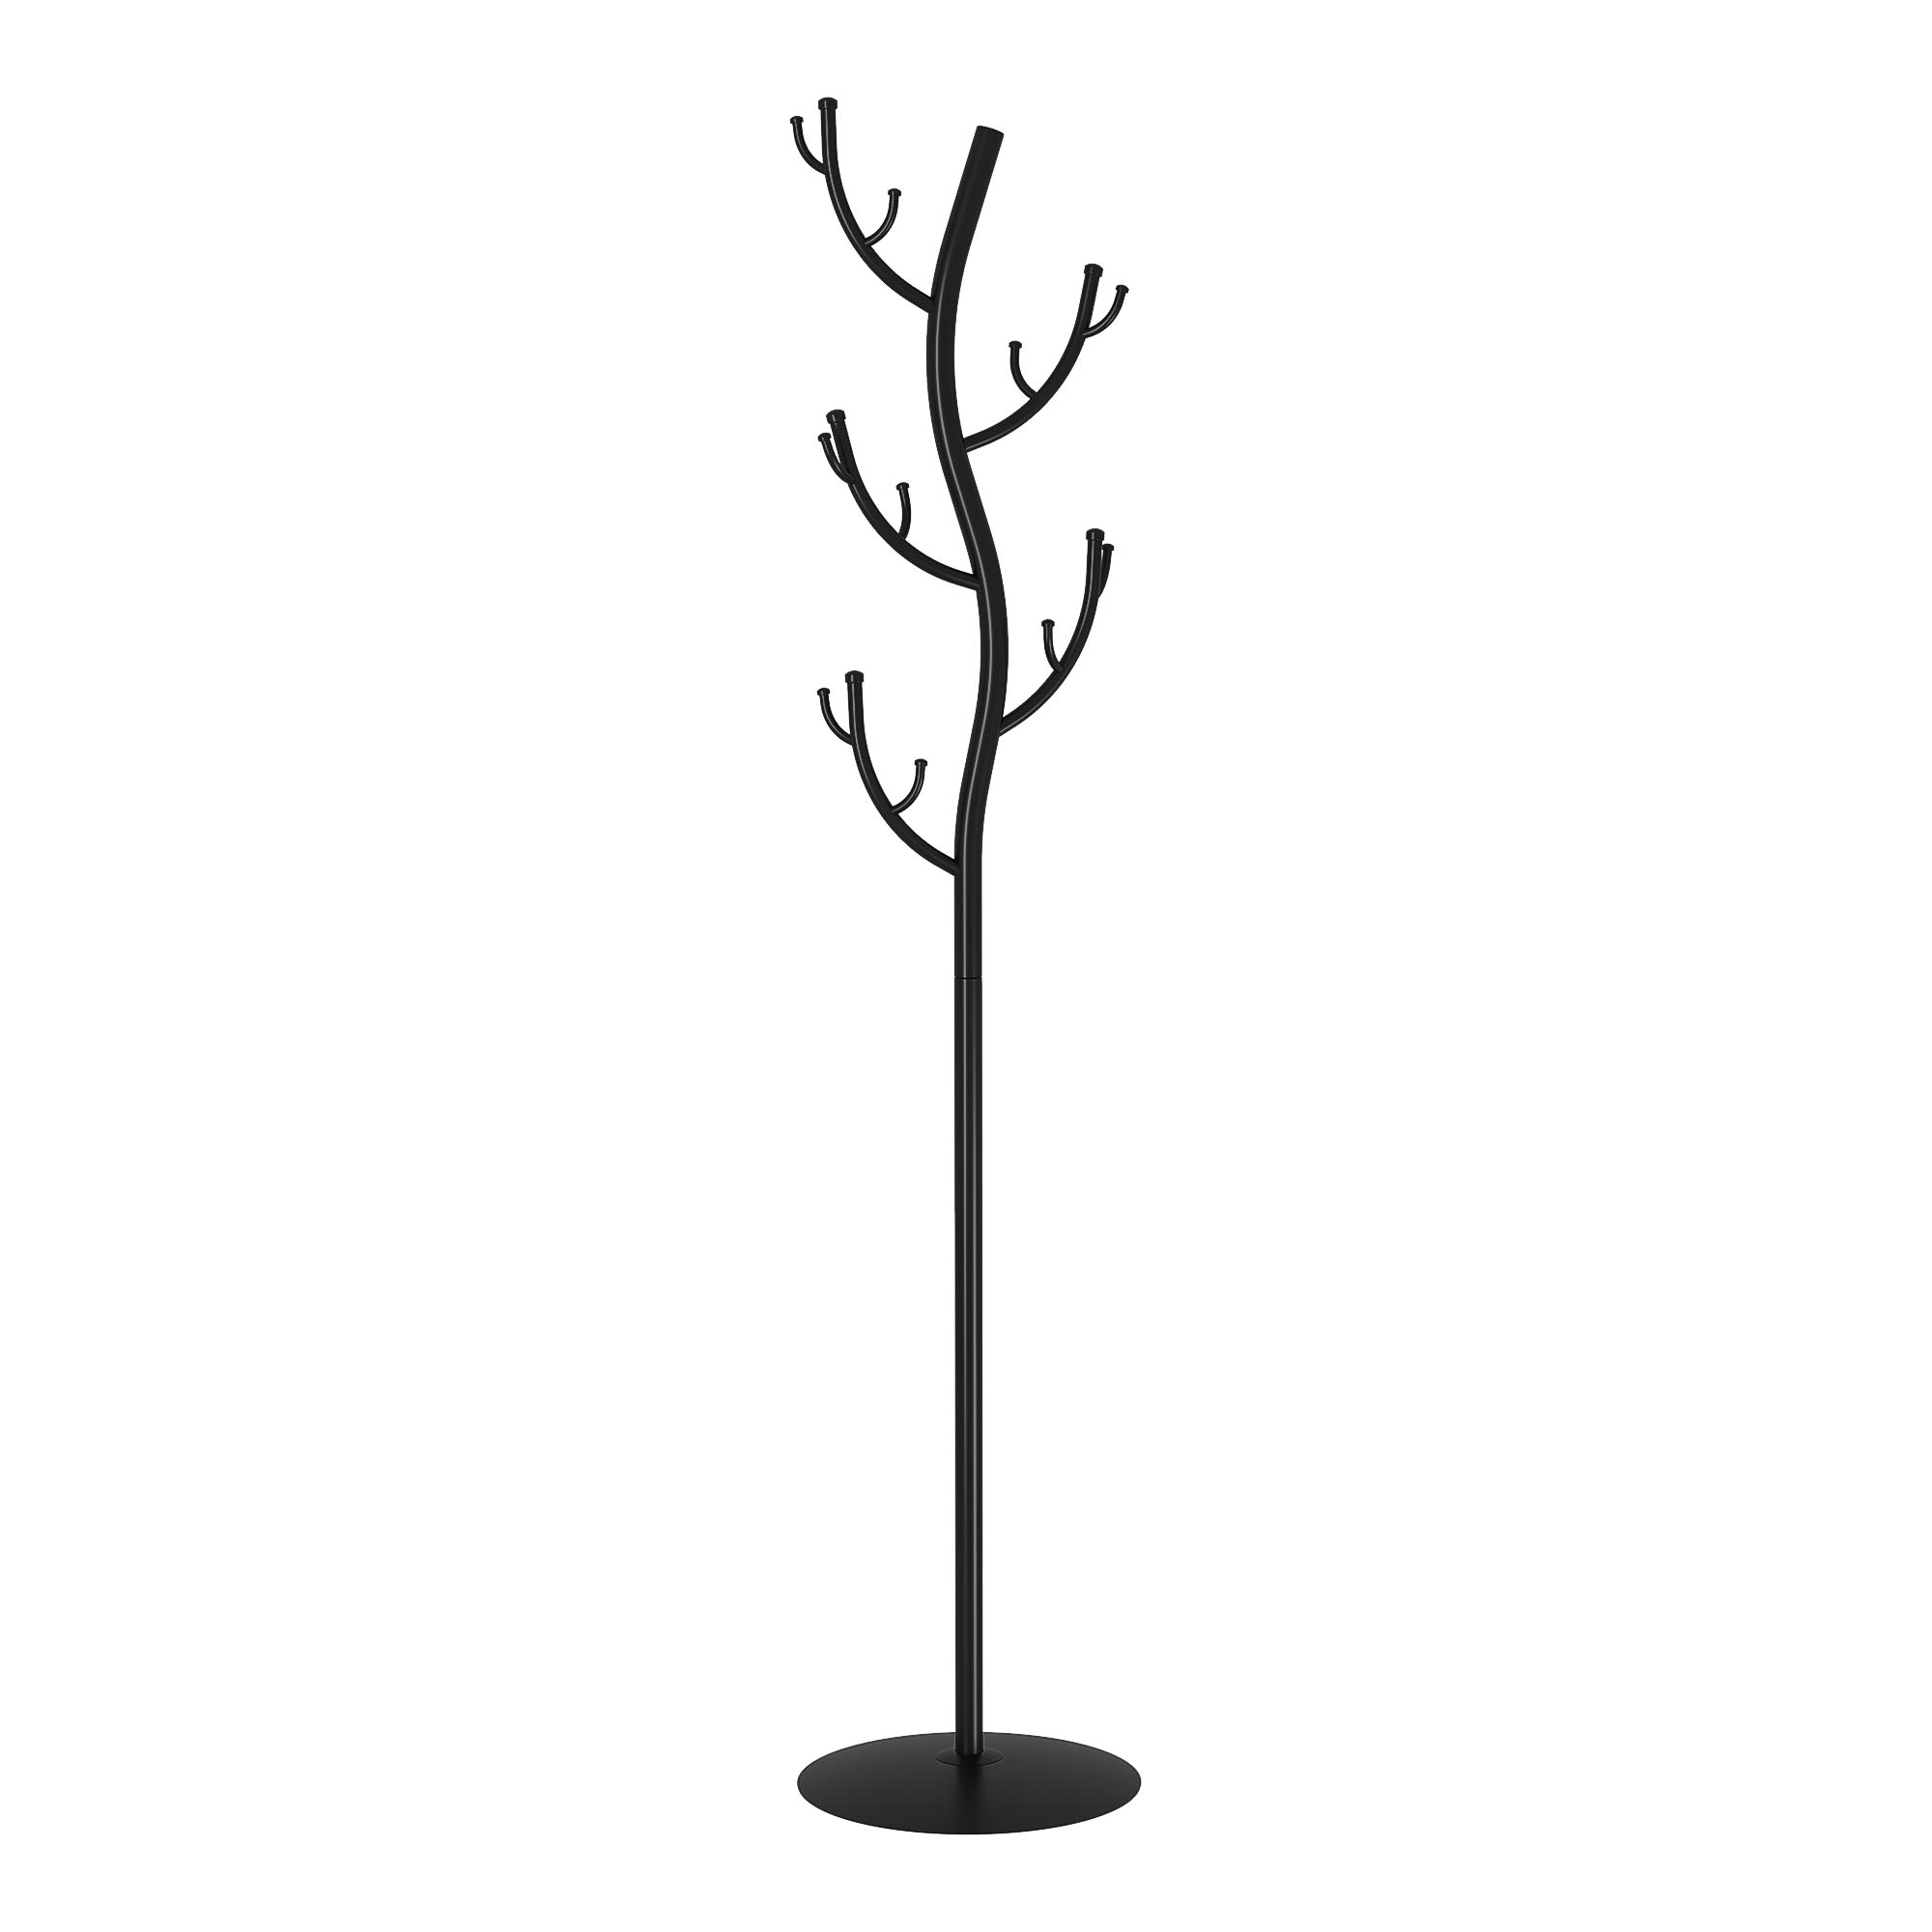 Вешалка напольная ЗМИ Дерево черная 37,5х37,5х181 см вешалка п 1 грингрант